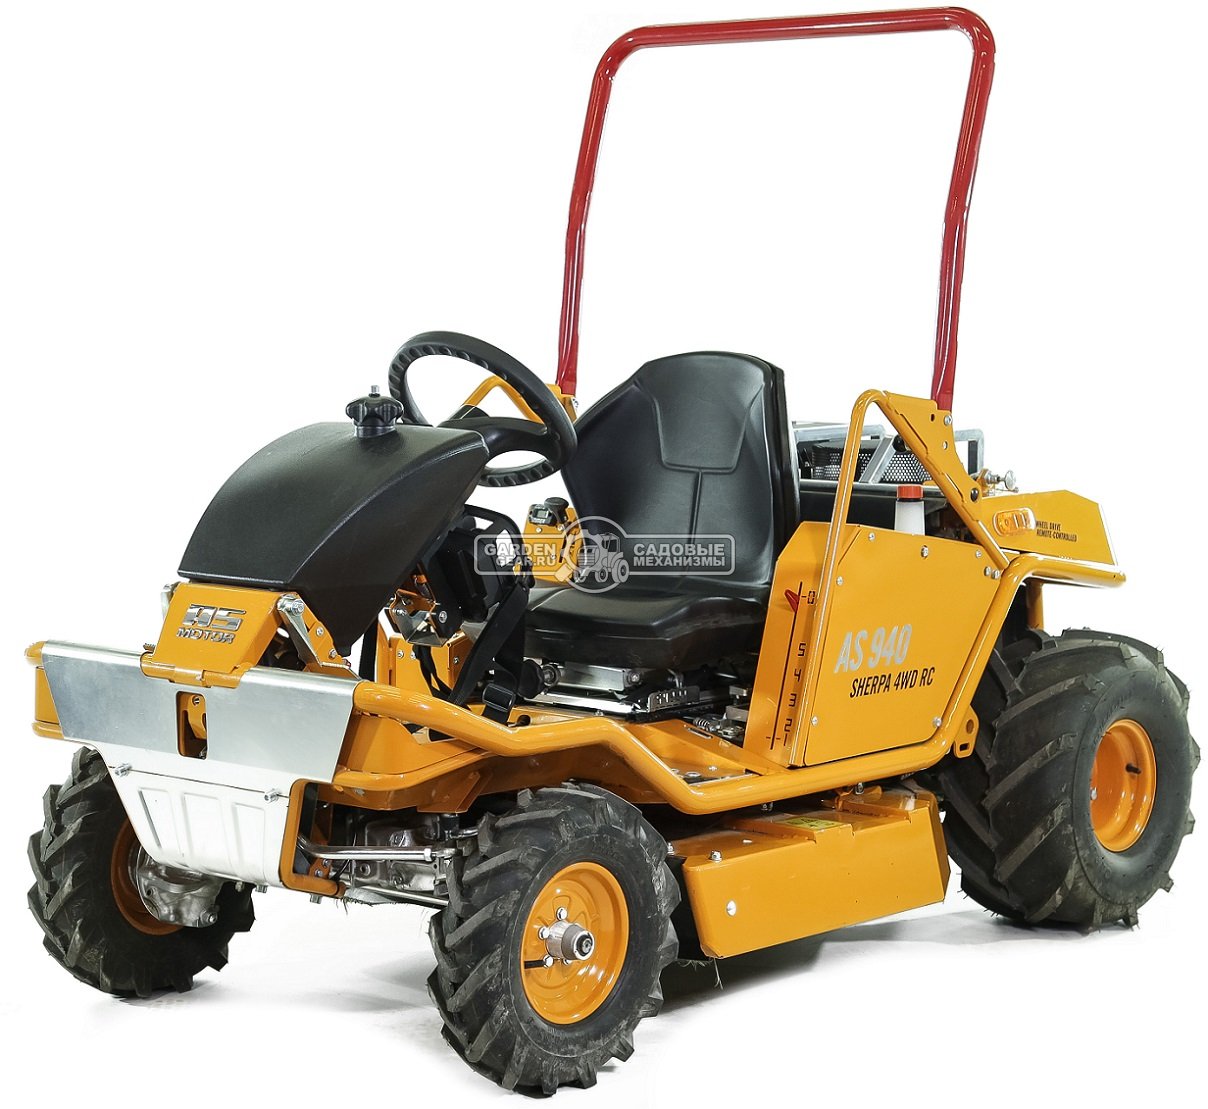 Садовый трактор для высокой травы и работы на склонах AS-Motor 940 Sherpa 4WD RC (GER, 90 см, B&S Pro, 724 см3, дифференциал, 325 кг.)